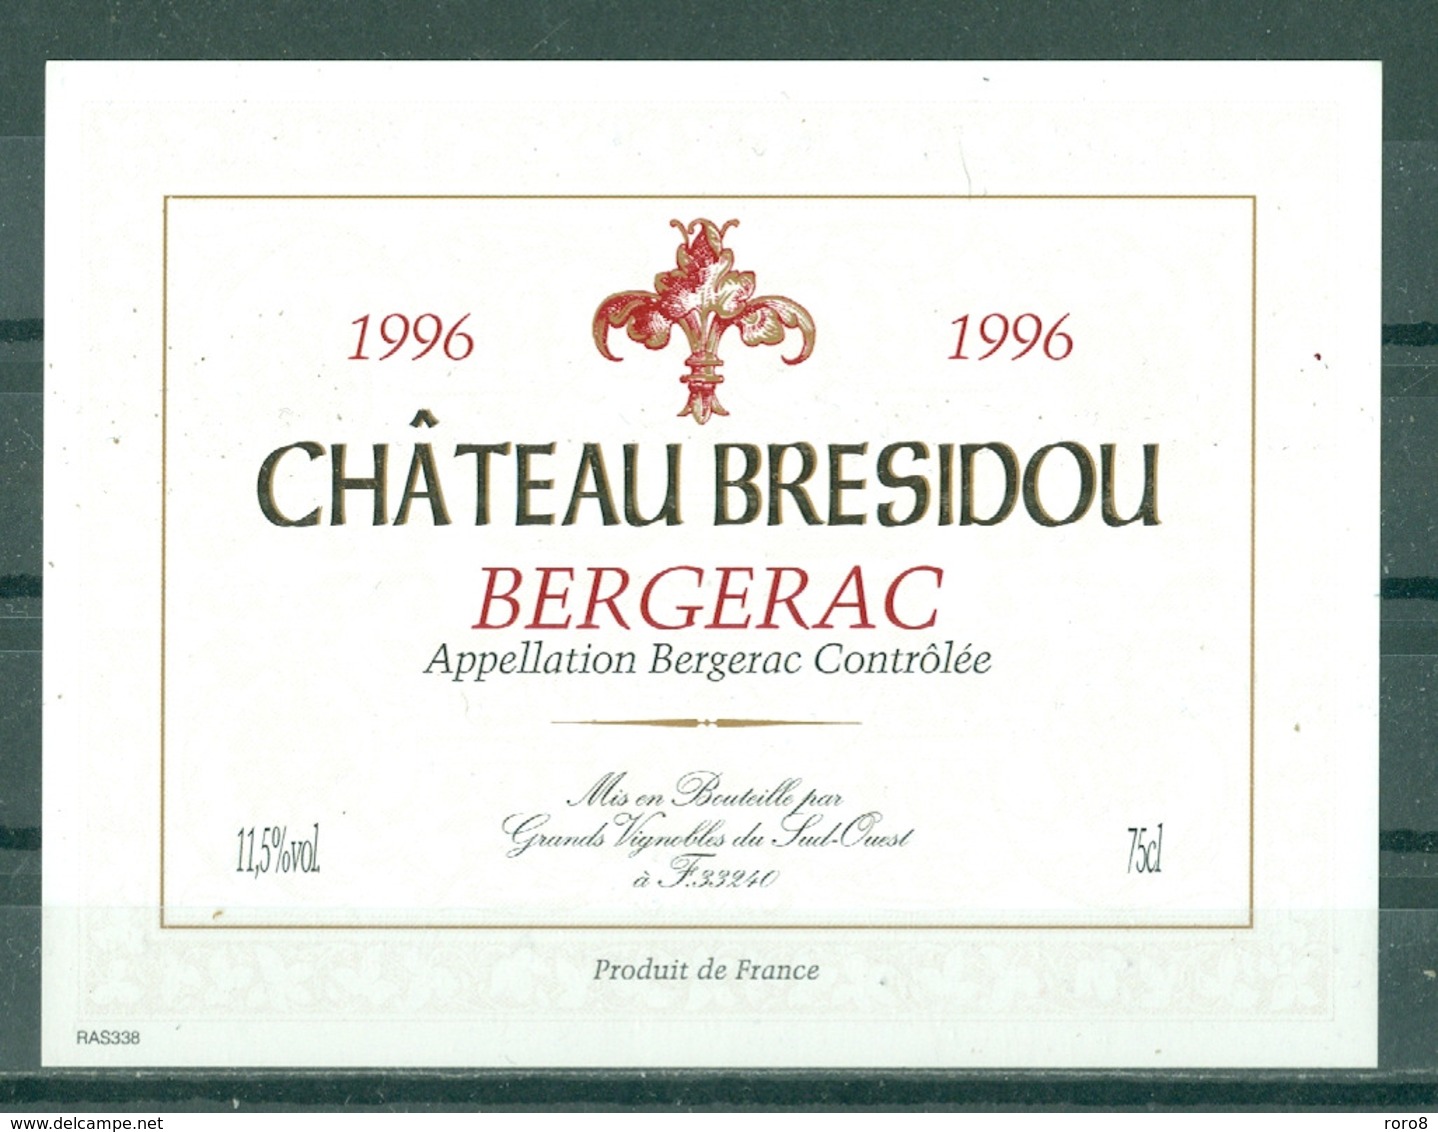 BERGERAC - CHATEAU BRESIDOU - 1996 - APPELLATION BERGERAC CONTROLEE (Etiquette Neuve)  11,5 % Vol.   75 Cl - Bergerac